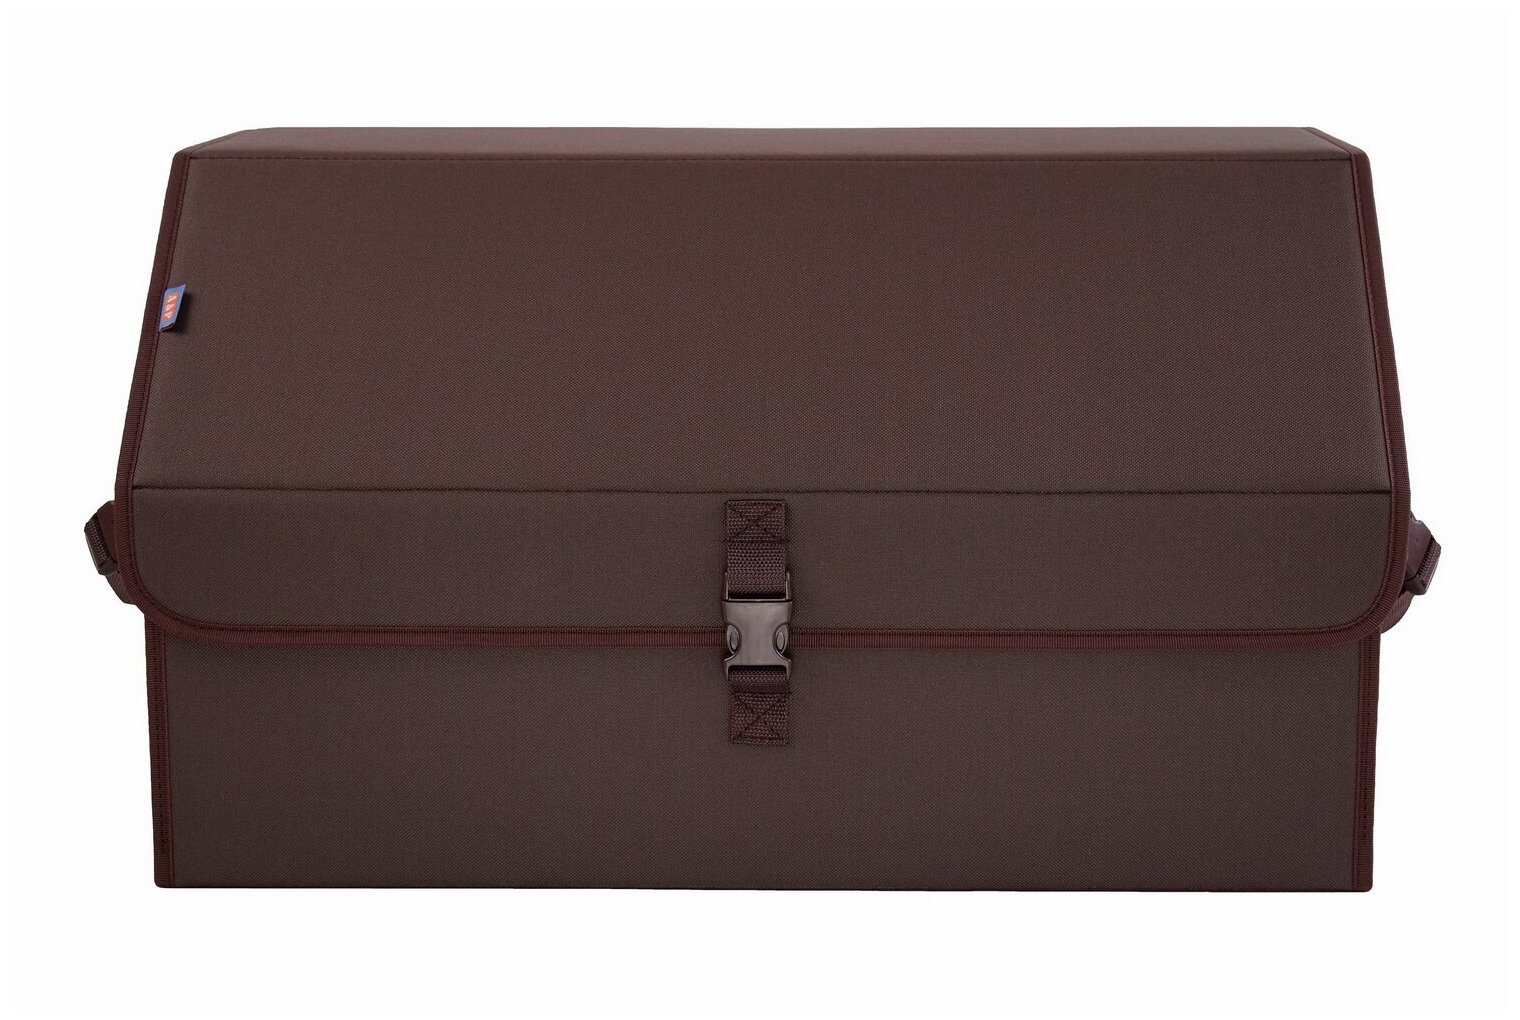 Органайзер-саквояж в багажник "Союз" (размер XL). Цвет: коричневый.